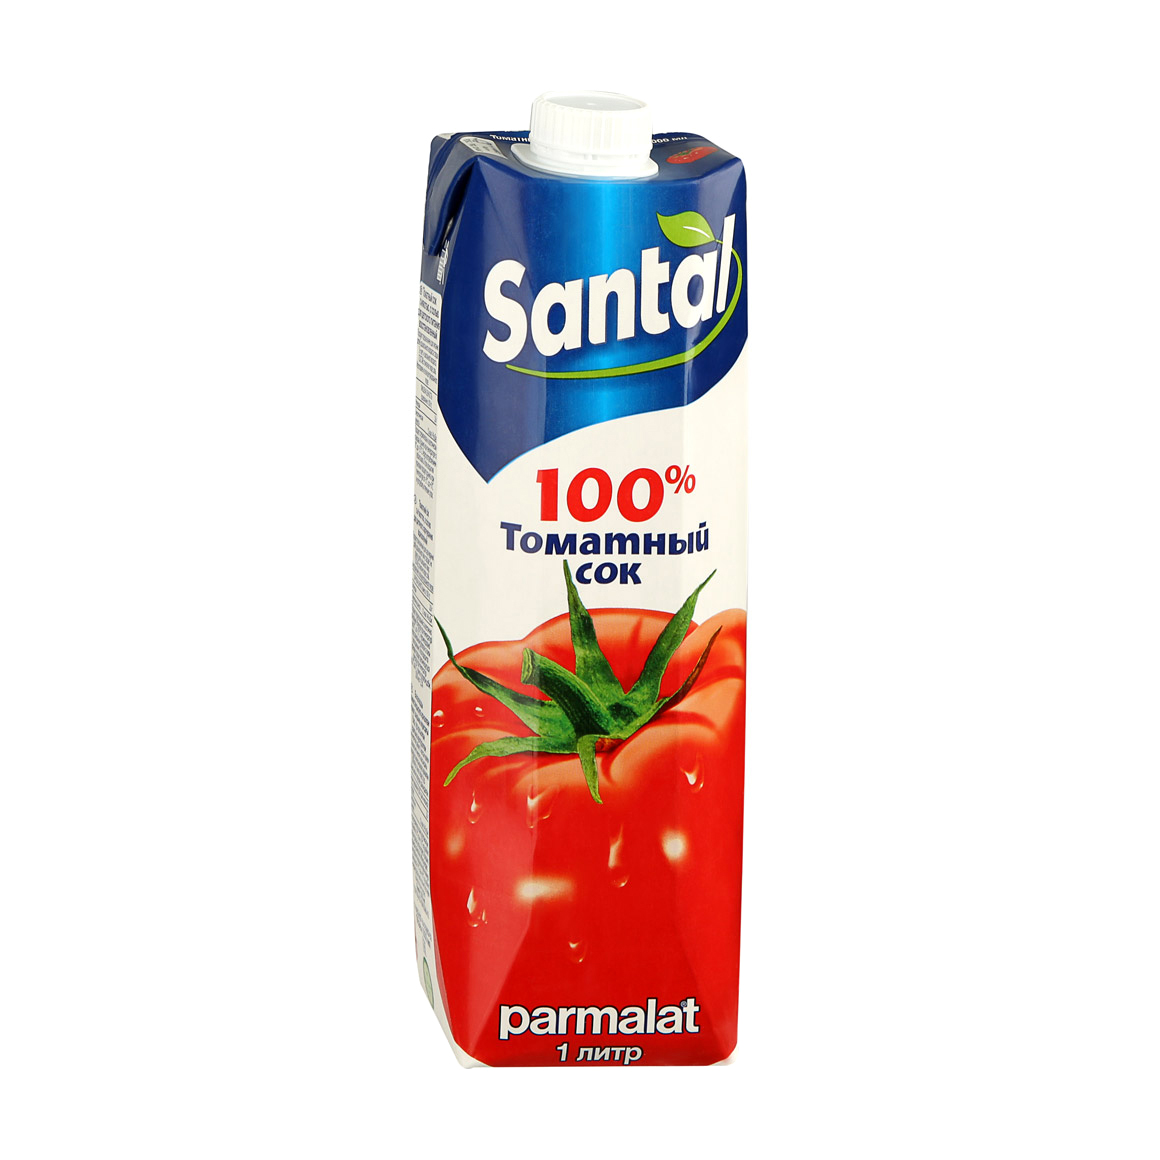 Сок Santal томатный 100% 1 л сок santal ананасовый 100% 1 л